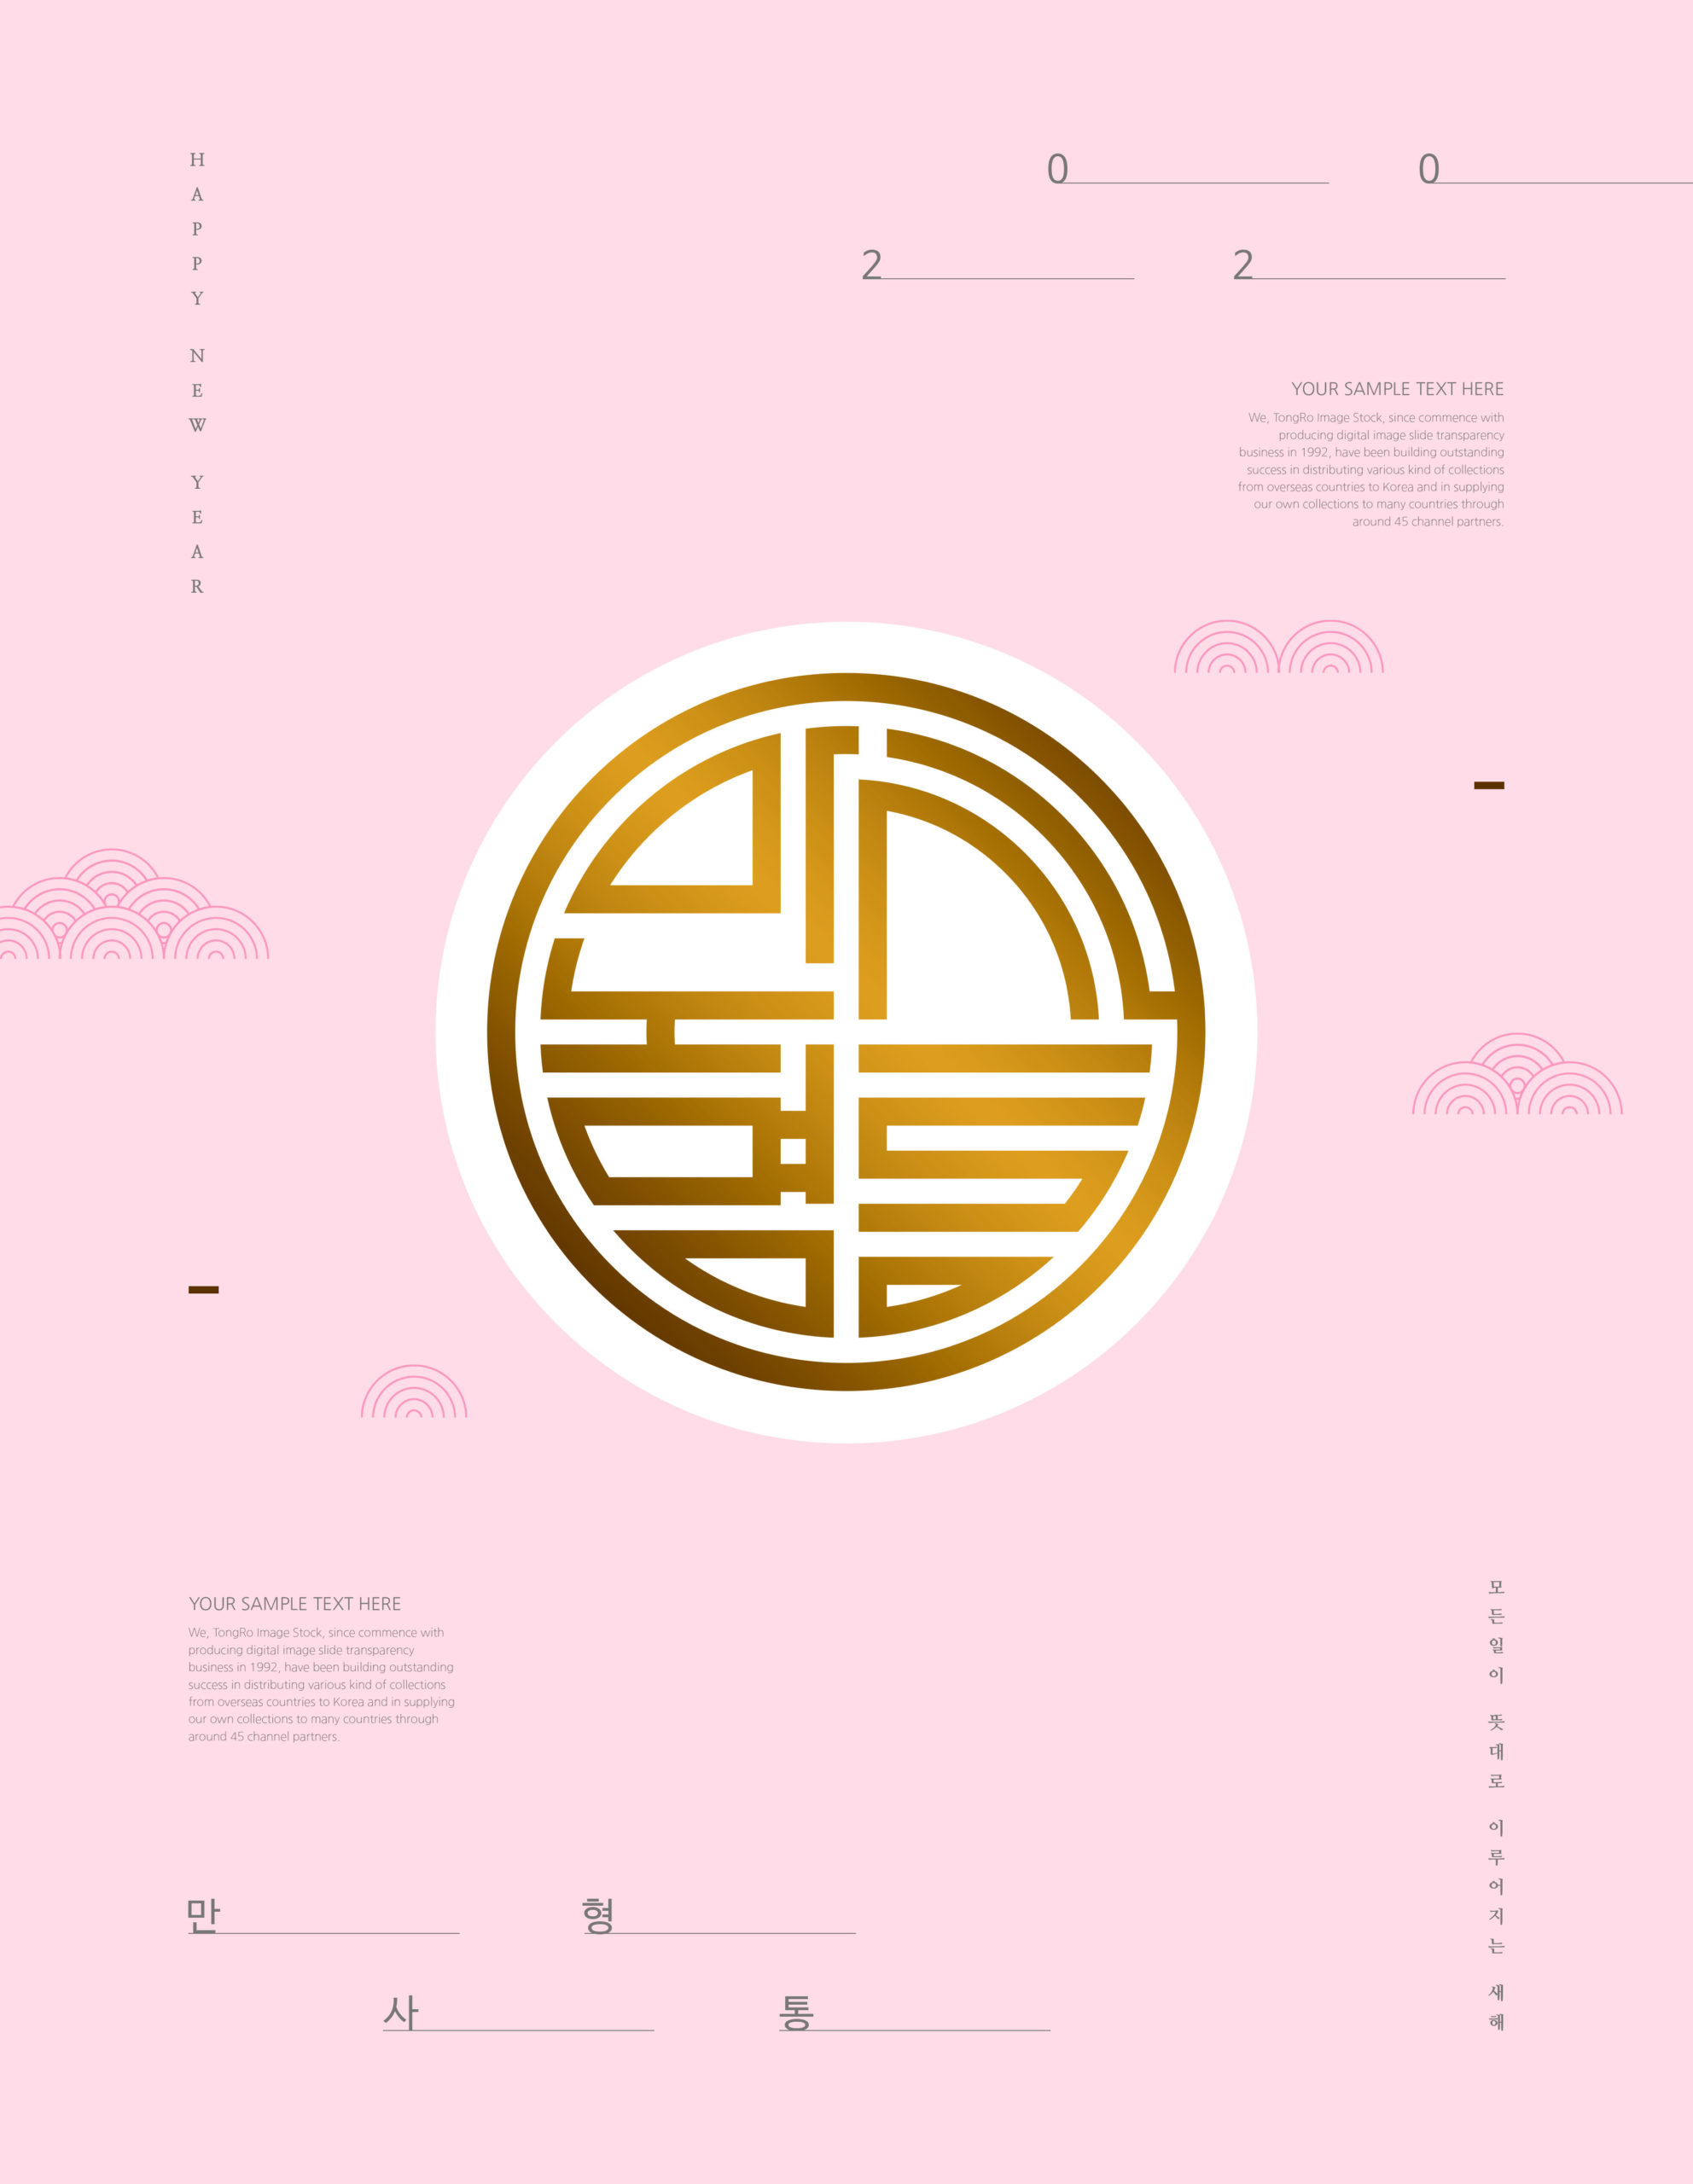 极简设计风格2020新年主题韩国海报PSD素材蚂蚁素材精选插图